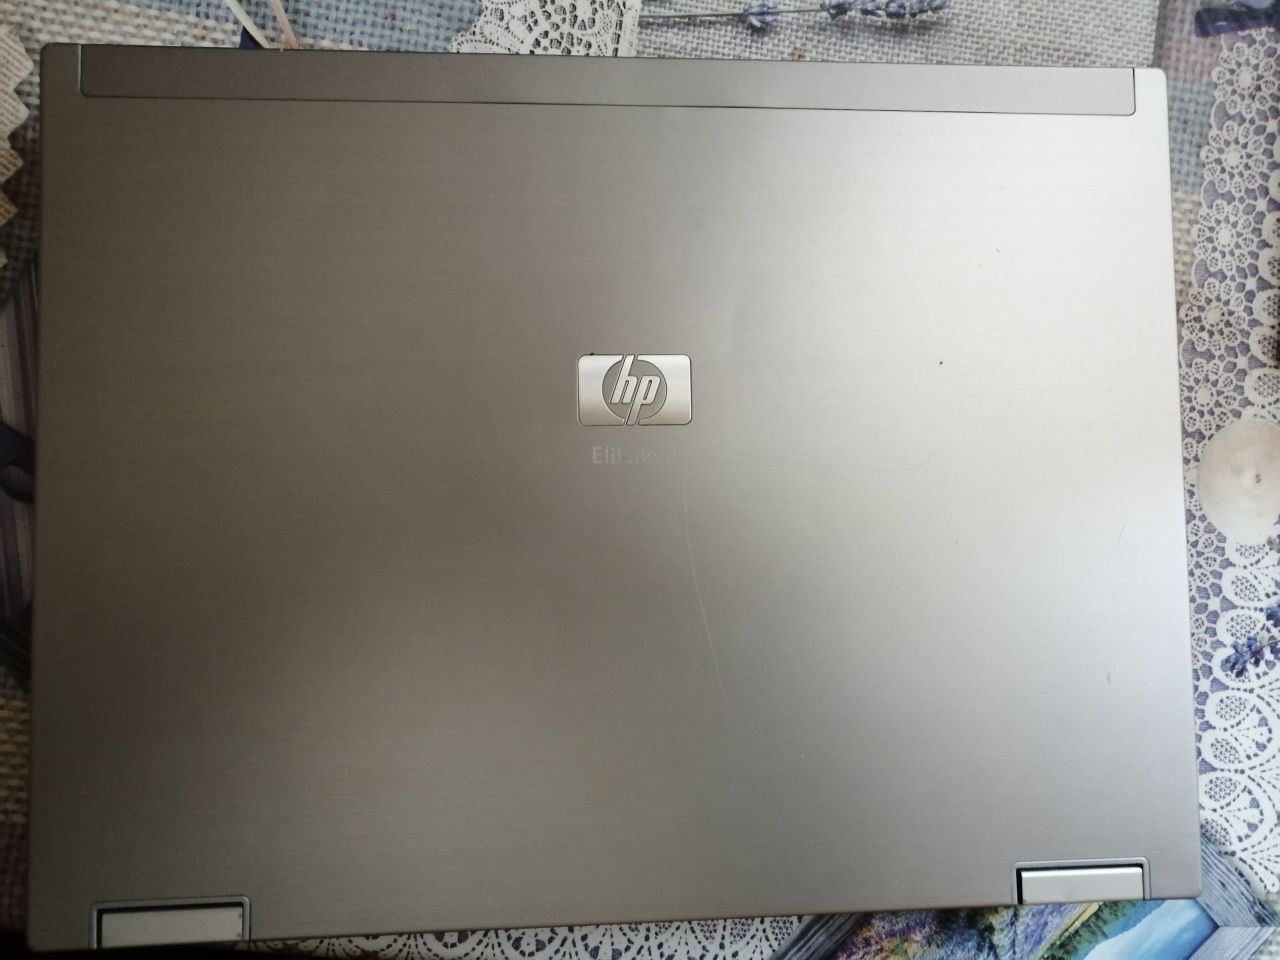 Ноутбук HP EliteBook 2530p HDD 1.8'